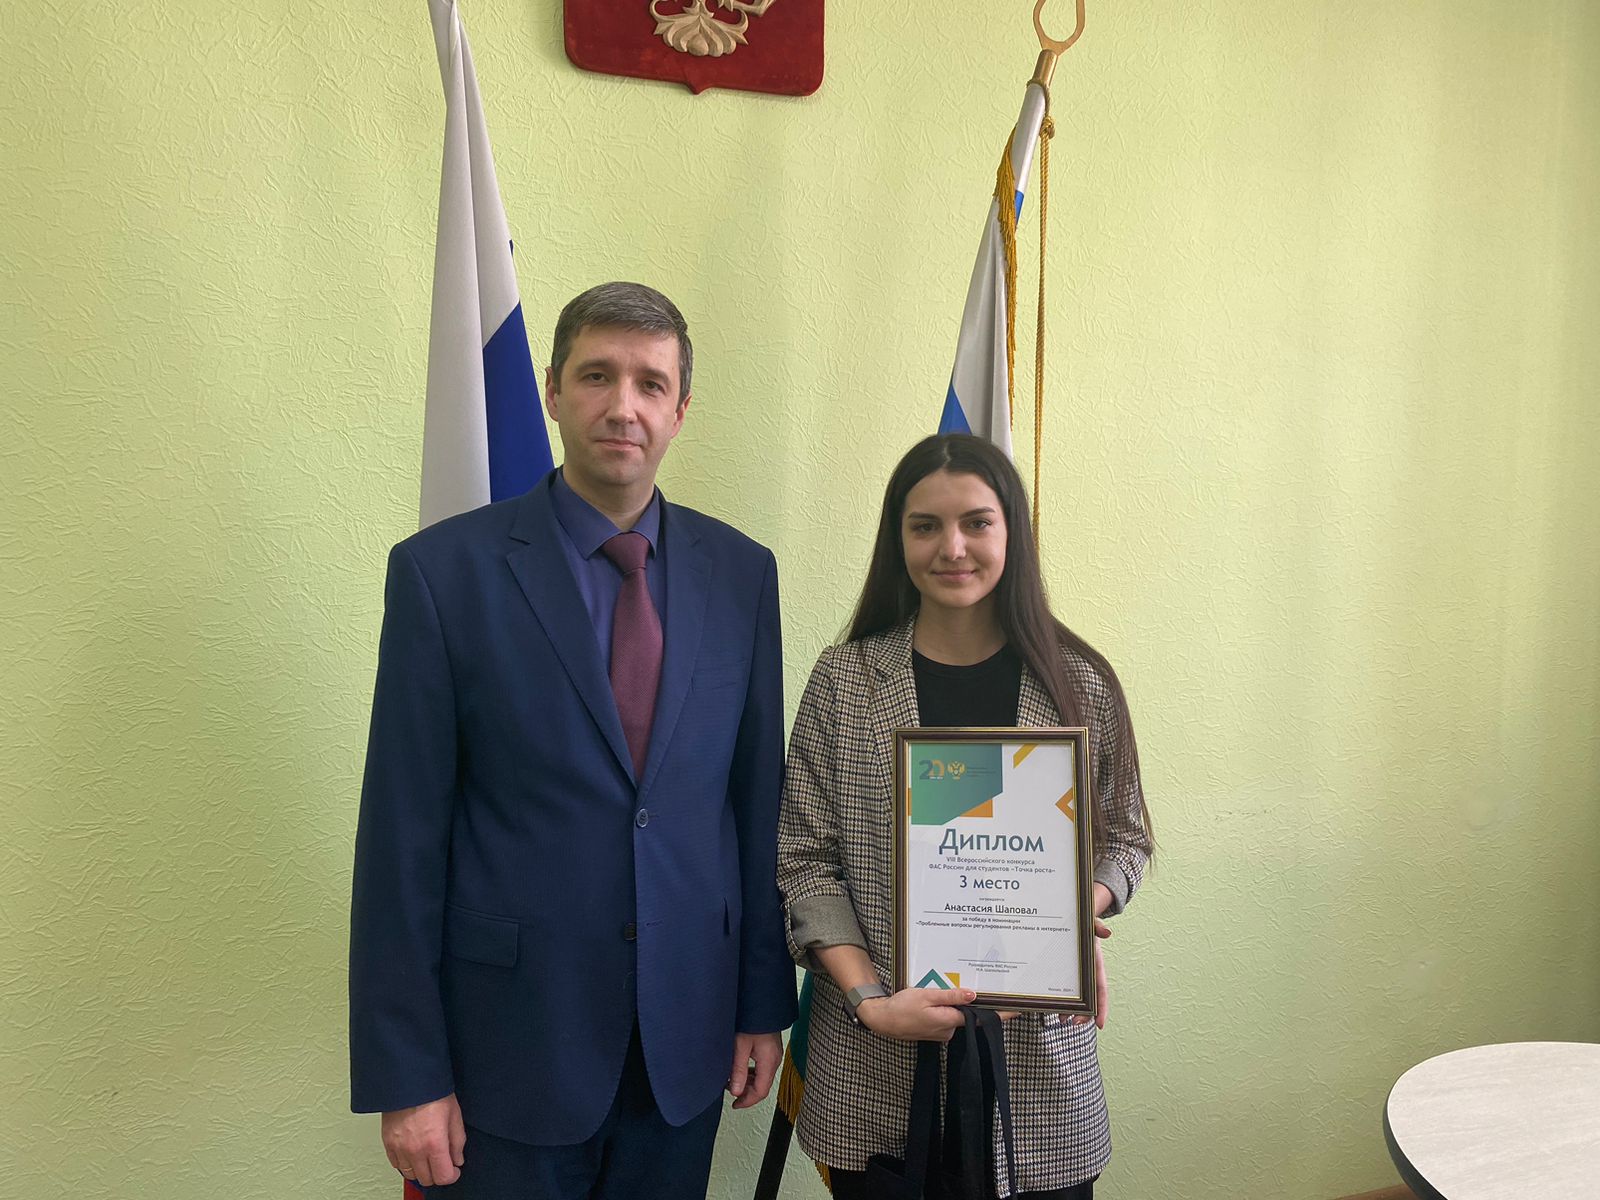 Студентка Академии получила заслуженную награду во всероссийском конкурсе .